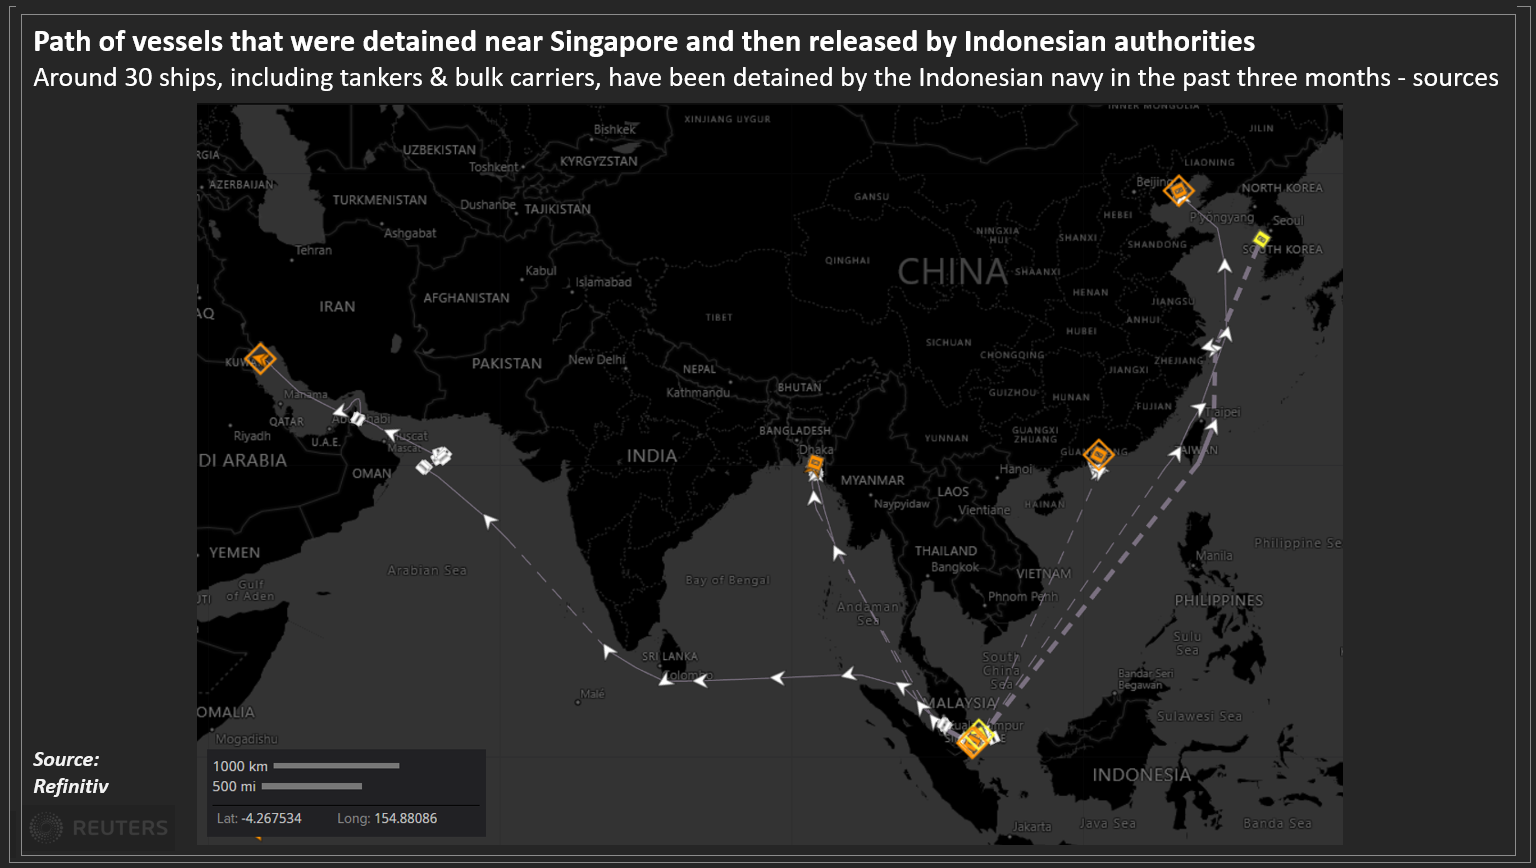 Trayectoria de los barcos que fueron detenidos cerca de Singapur y luego liberados por las autoridades indonesias